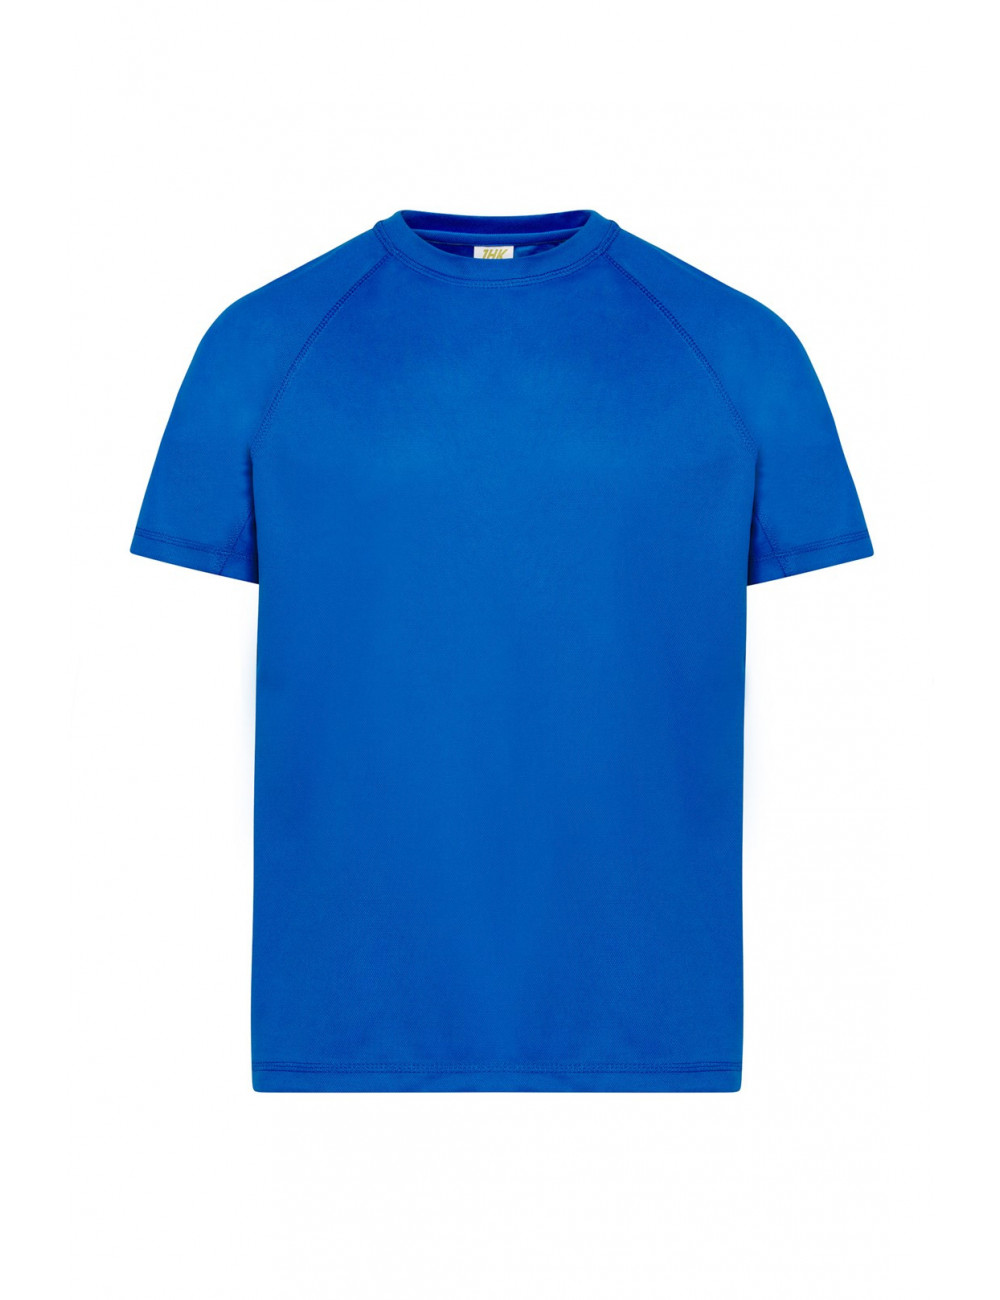 Kinder-Sport-T-Shirt kid königsblau JHK